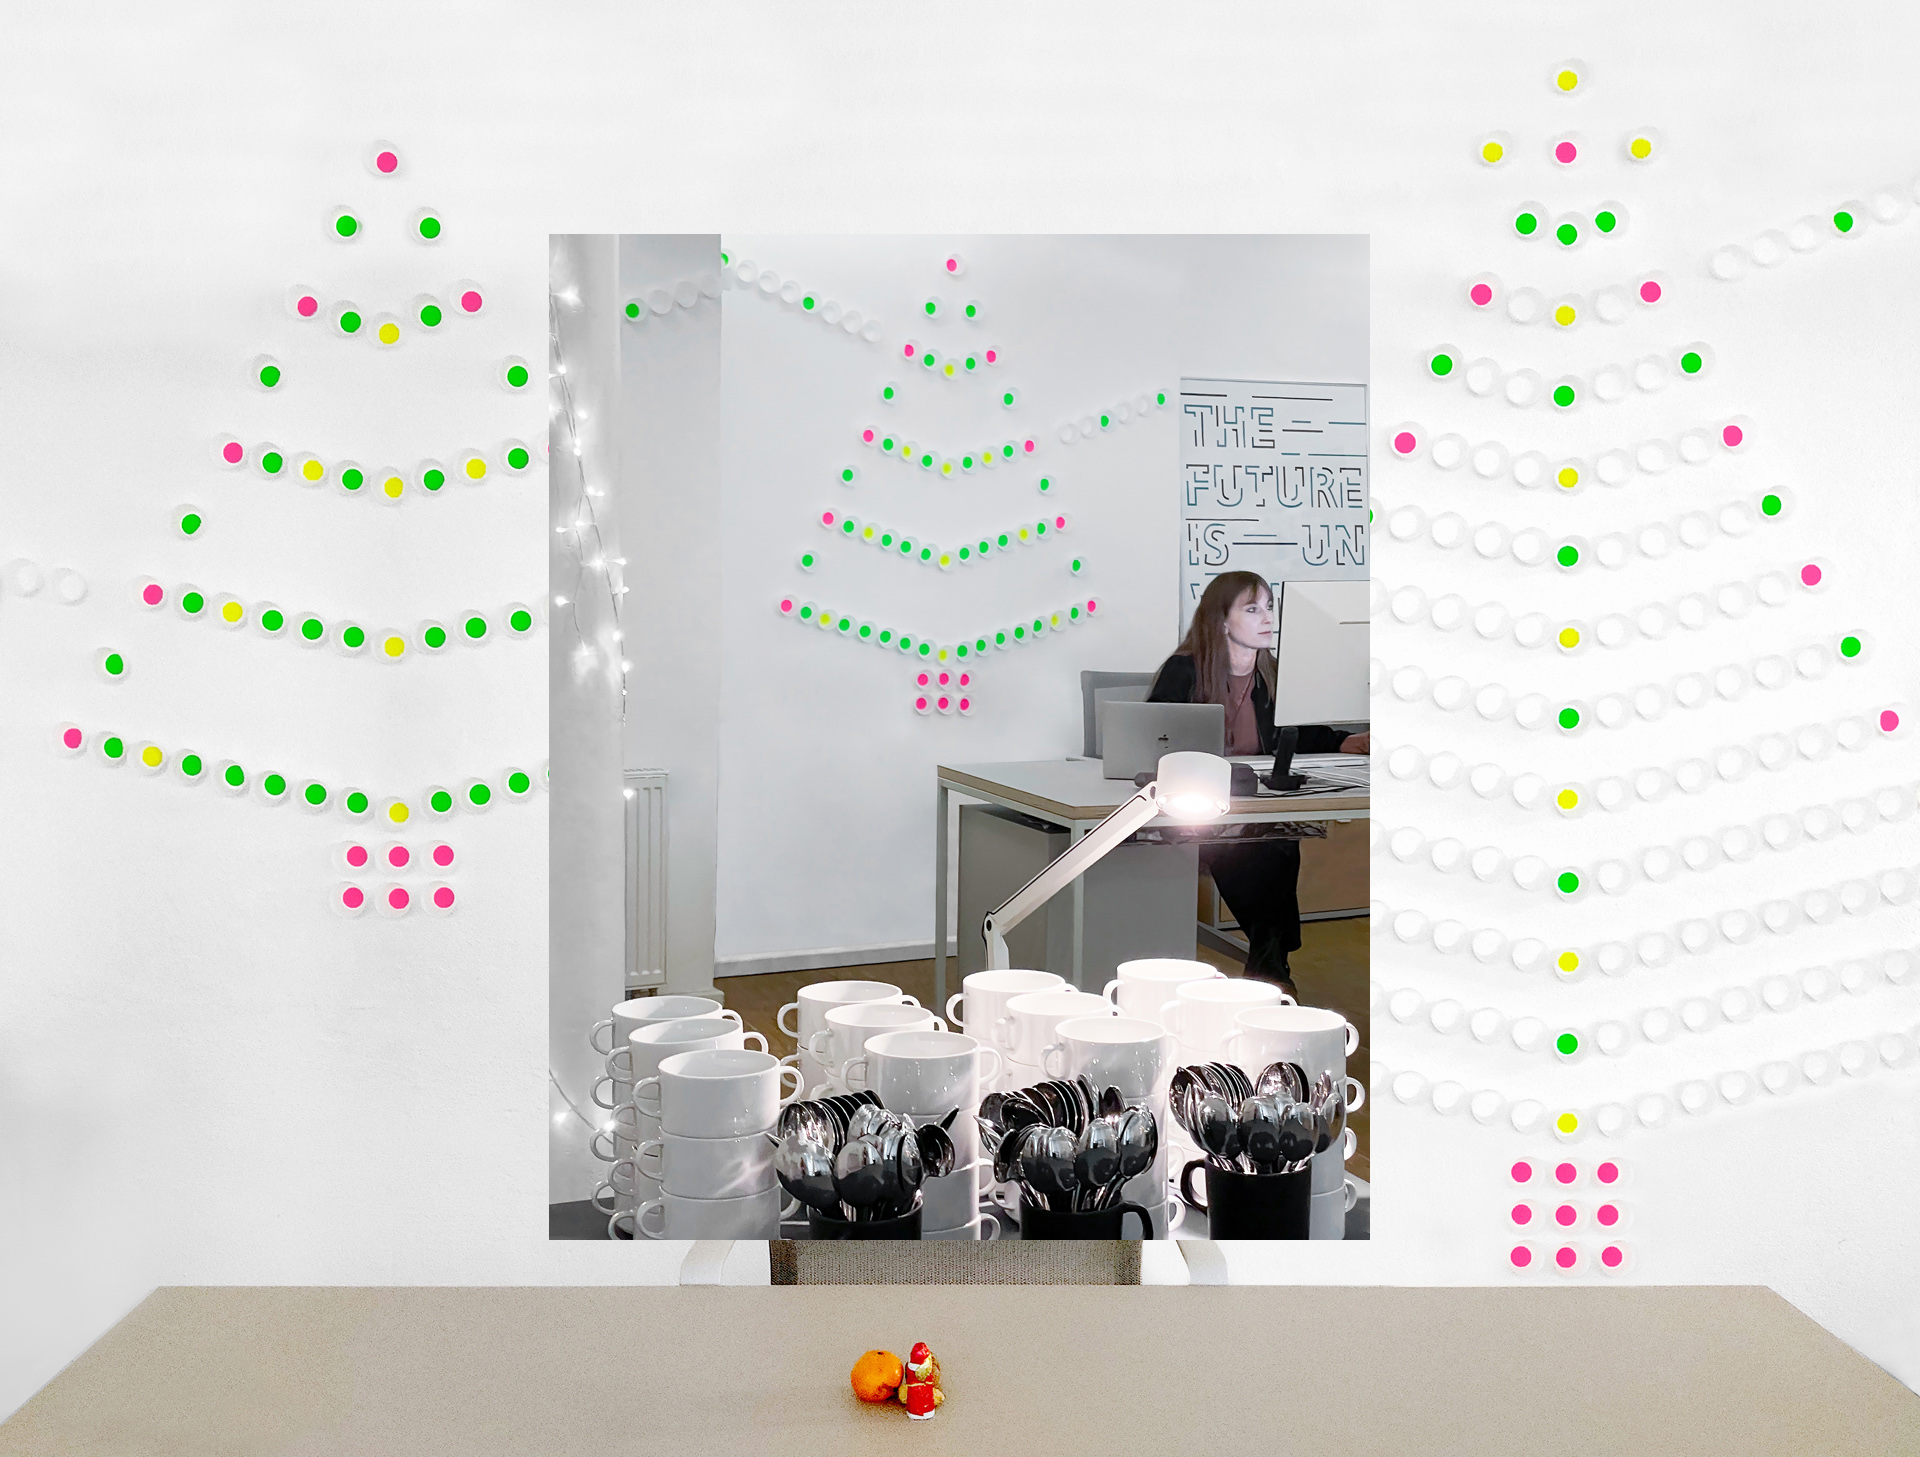 Collage bestehen aus 2 Fotos, auf welchen die weihnachtliche Raumgestaltung, durch bunte, an der Wand angebrachten Cupcake Formen dargestellt wird